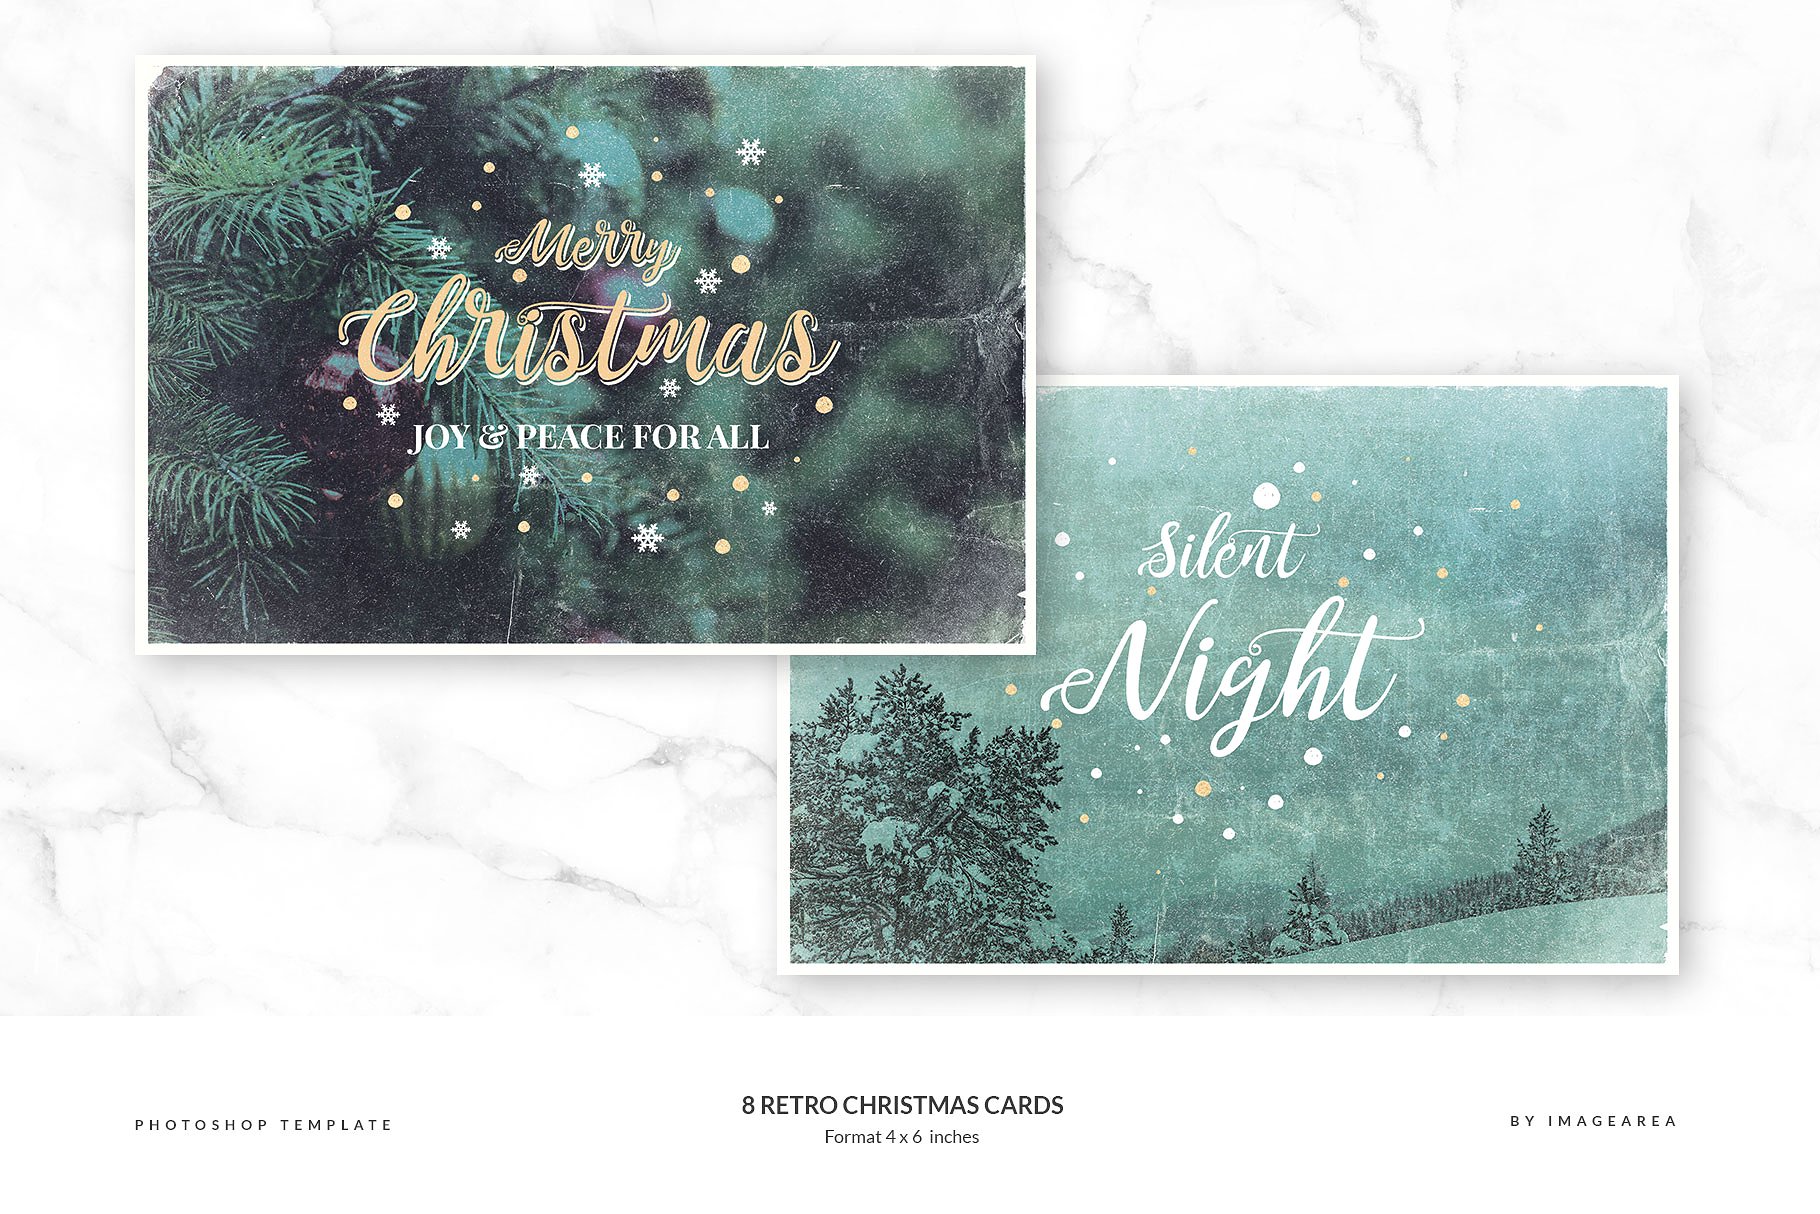 复古风圣诞节贺卡模板 Retro Christmas Cards插图2